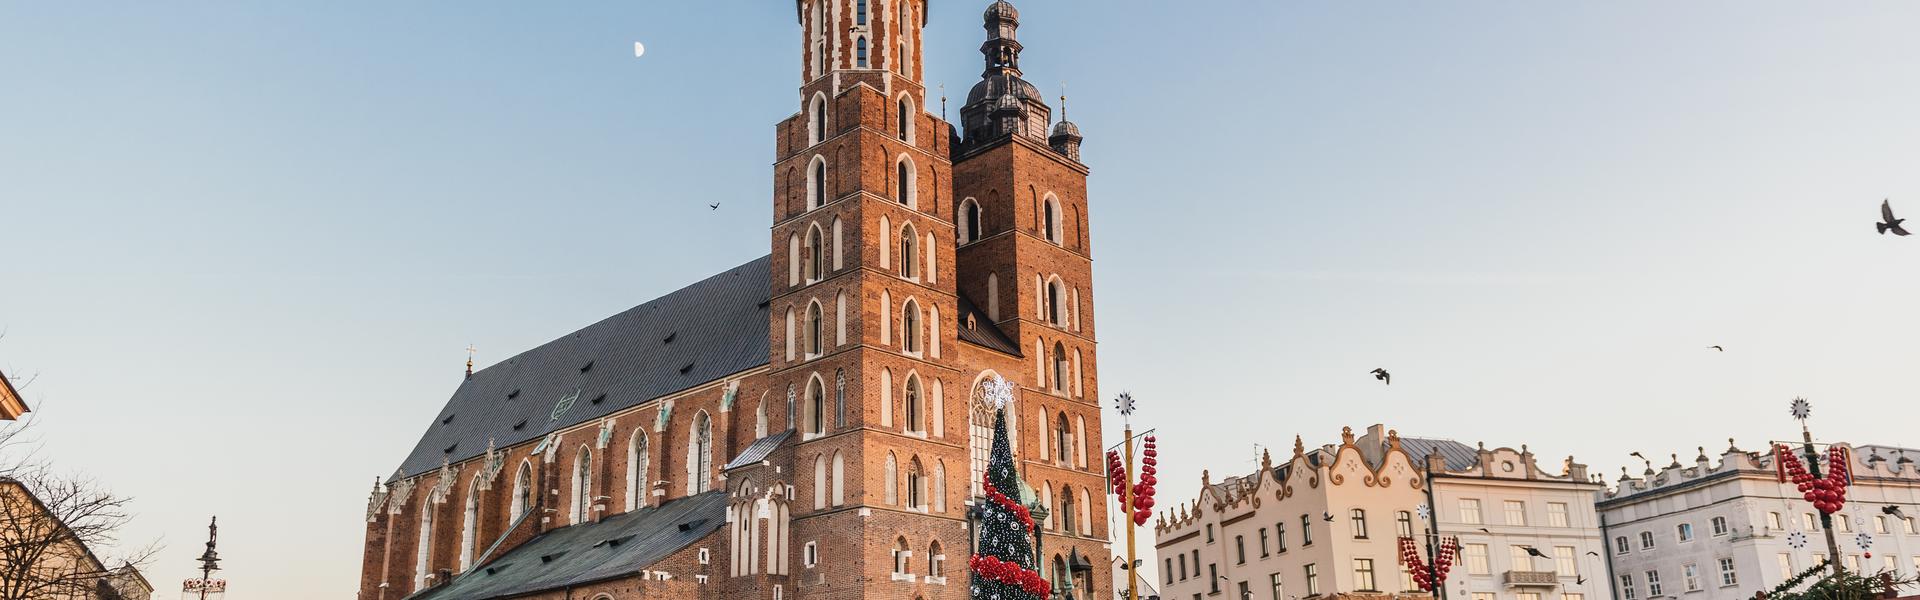 Przed kościołem mariackim na krakowskim rynku stoi wysoka choinka z czerwonymi i białymi ozdobami oraz drewniane stragany.